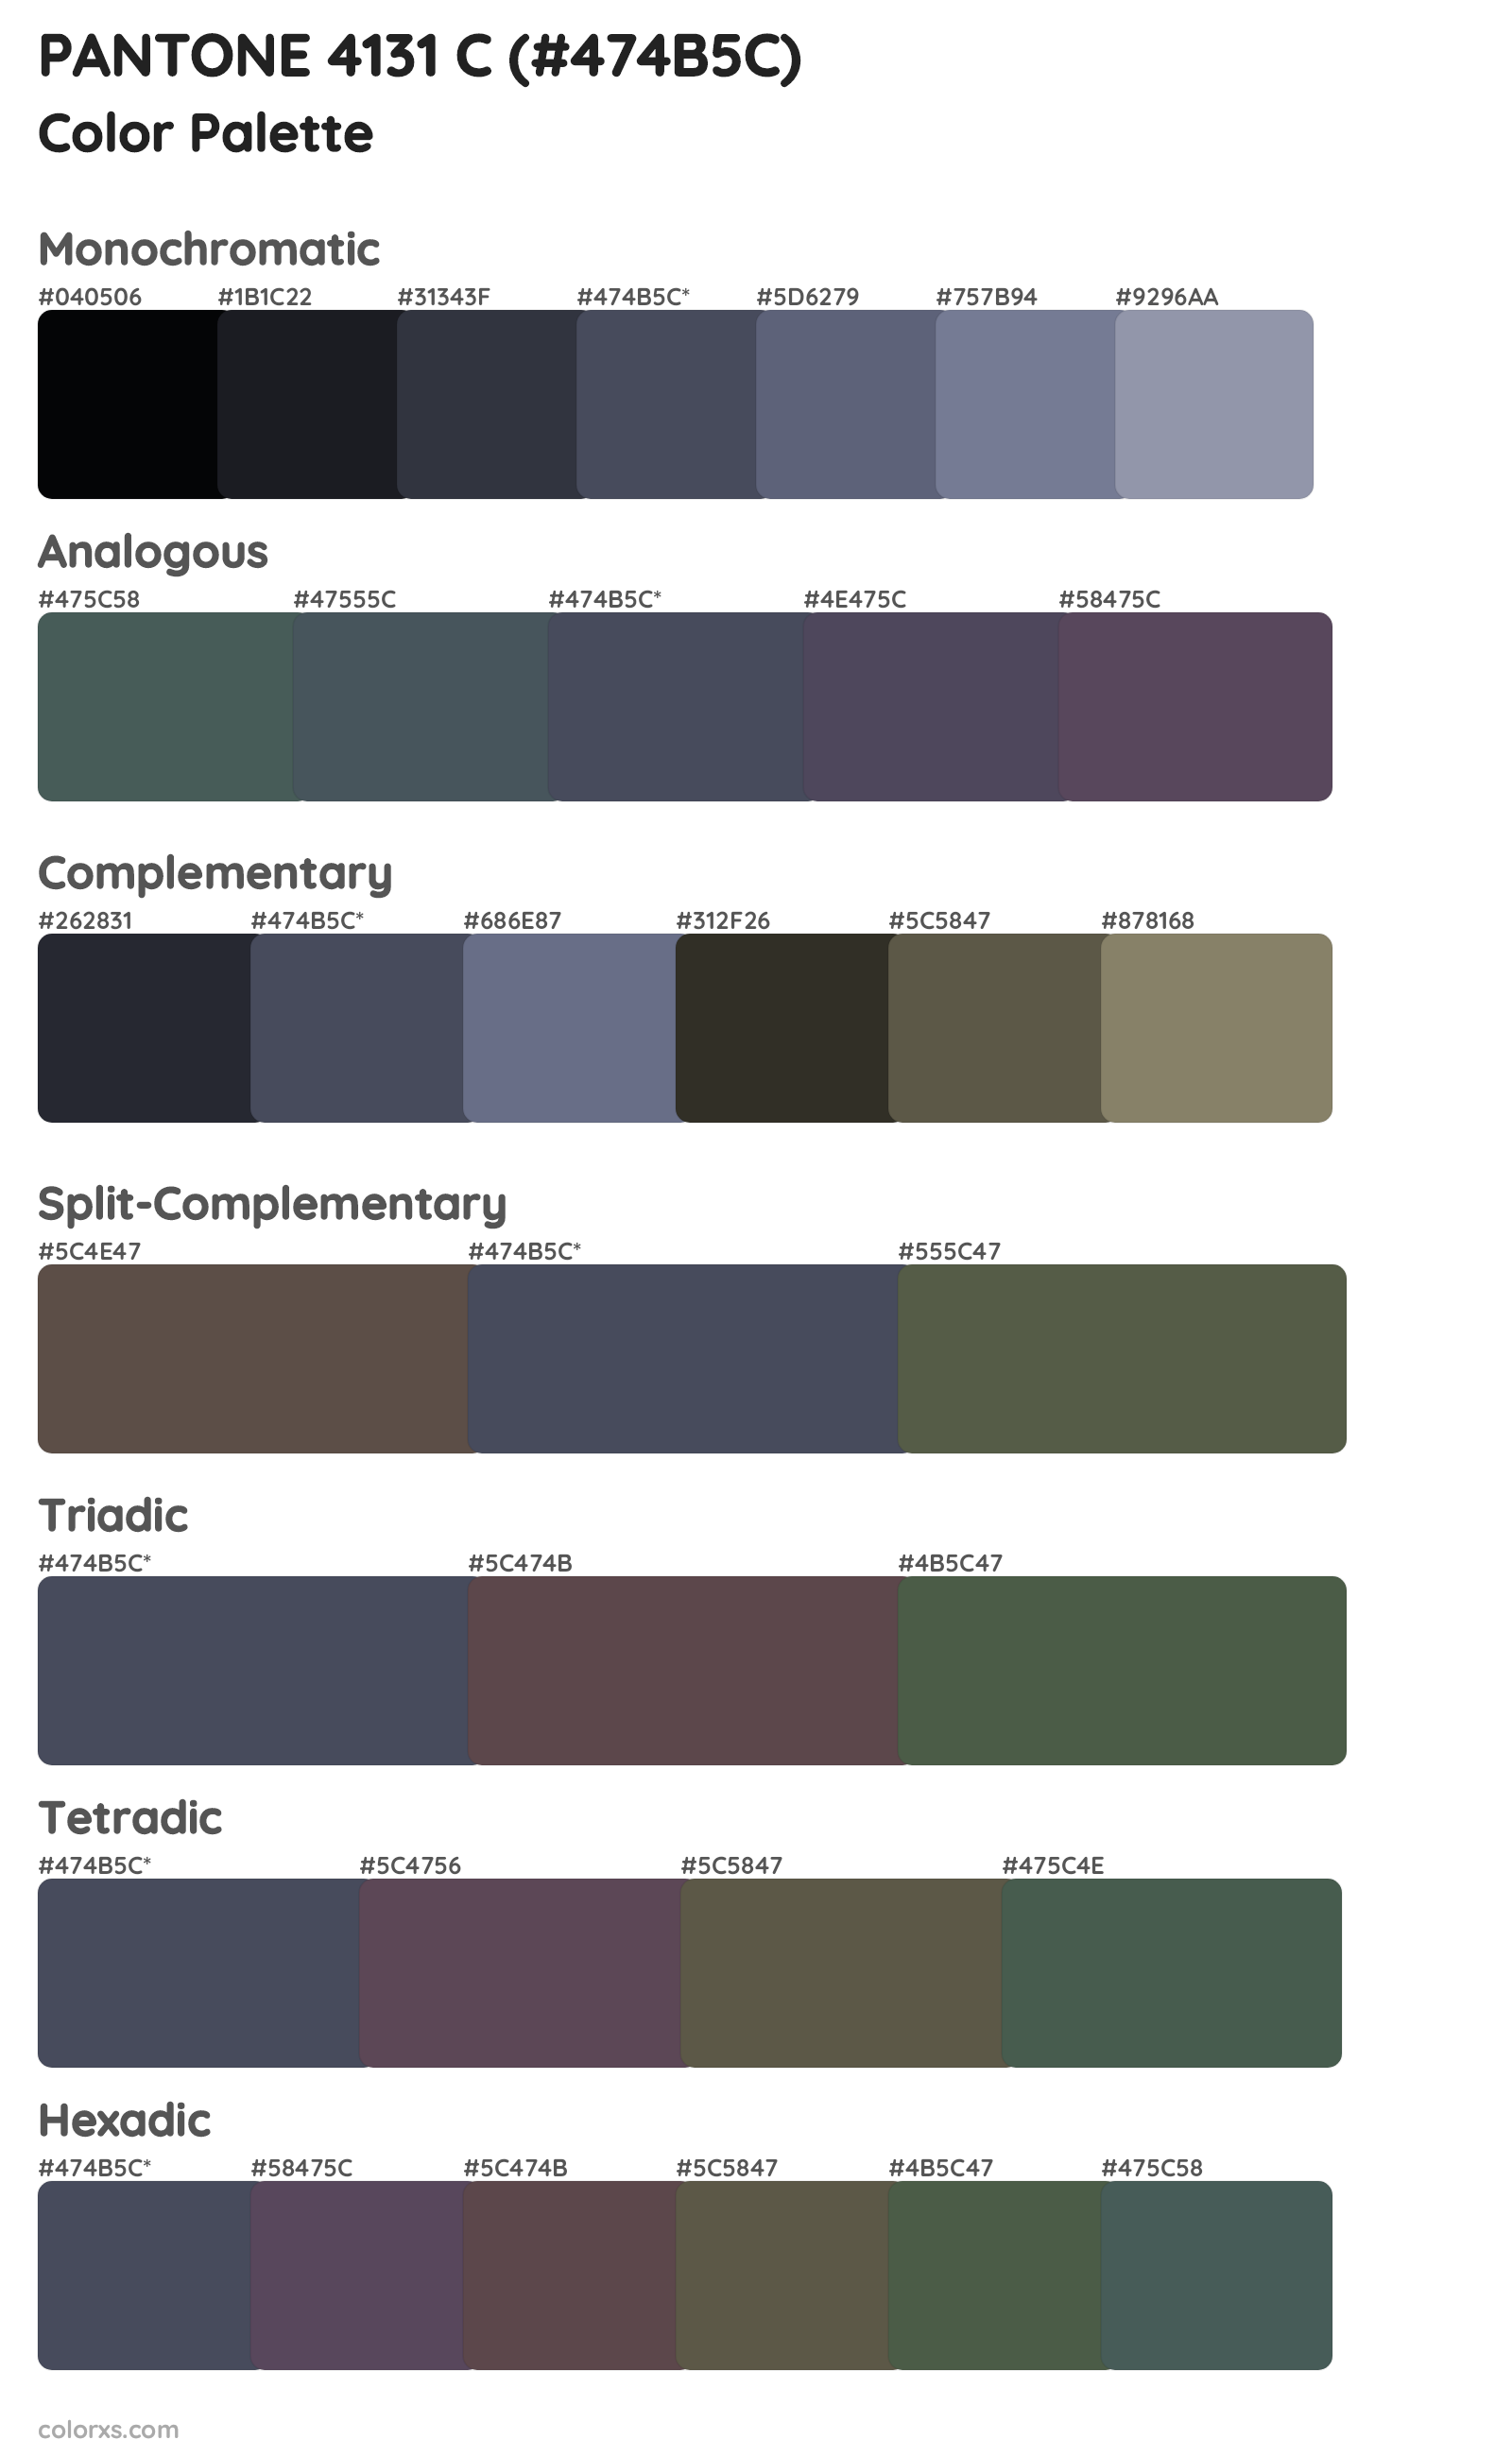 PANTONE 4131 C Color Scheme Palettes